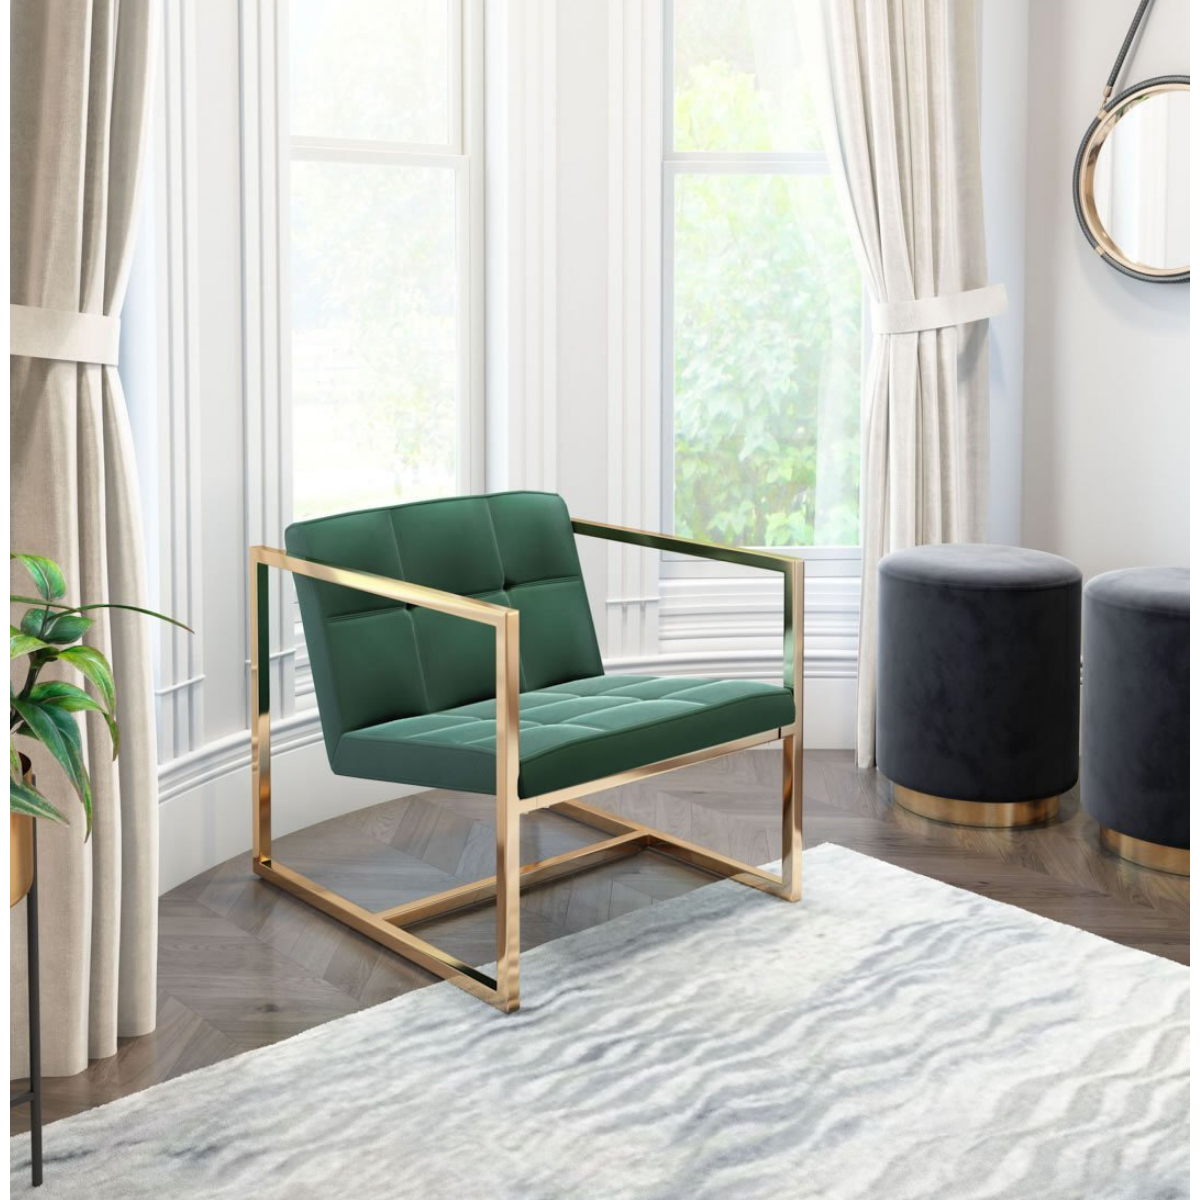 Vibrant Armchair In Green Velvet & Gold